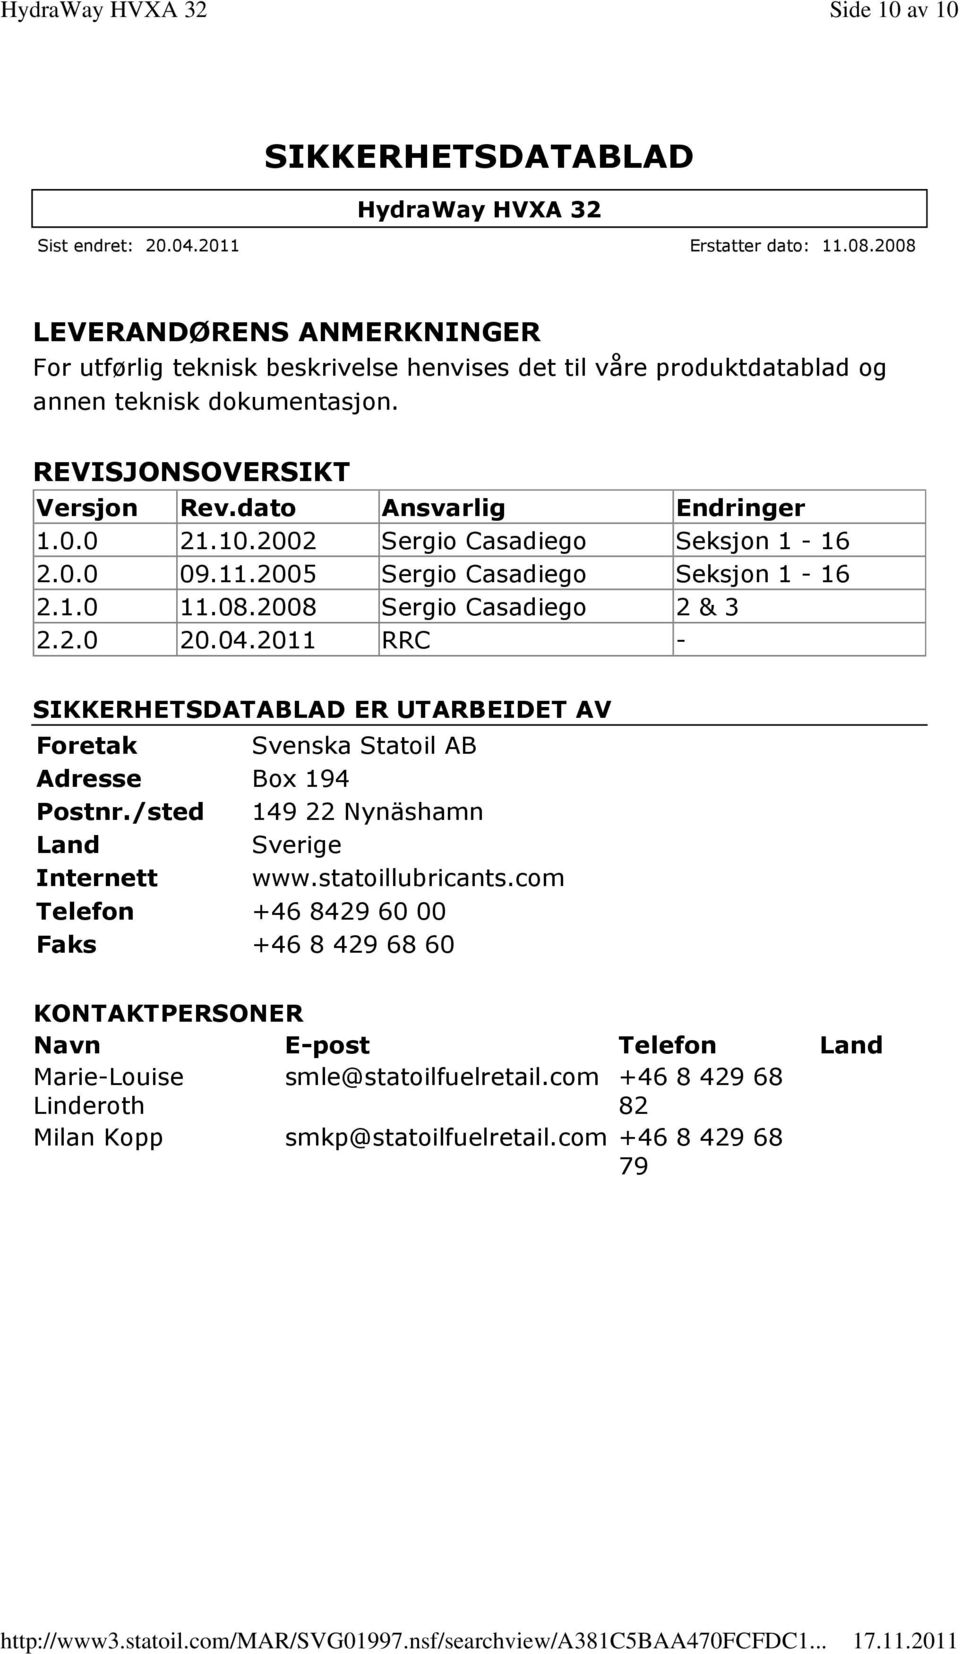 2011 RRC - ER UTARBEIDET AV Foretak Svenska Statoil AB Adresse Box 194 Postnr./sted 149 22 Nynäshamn Land Sverige Internett www.statoillubricants.